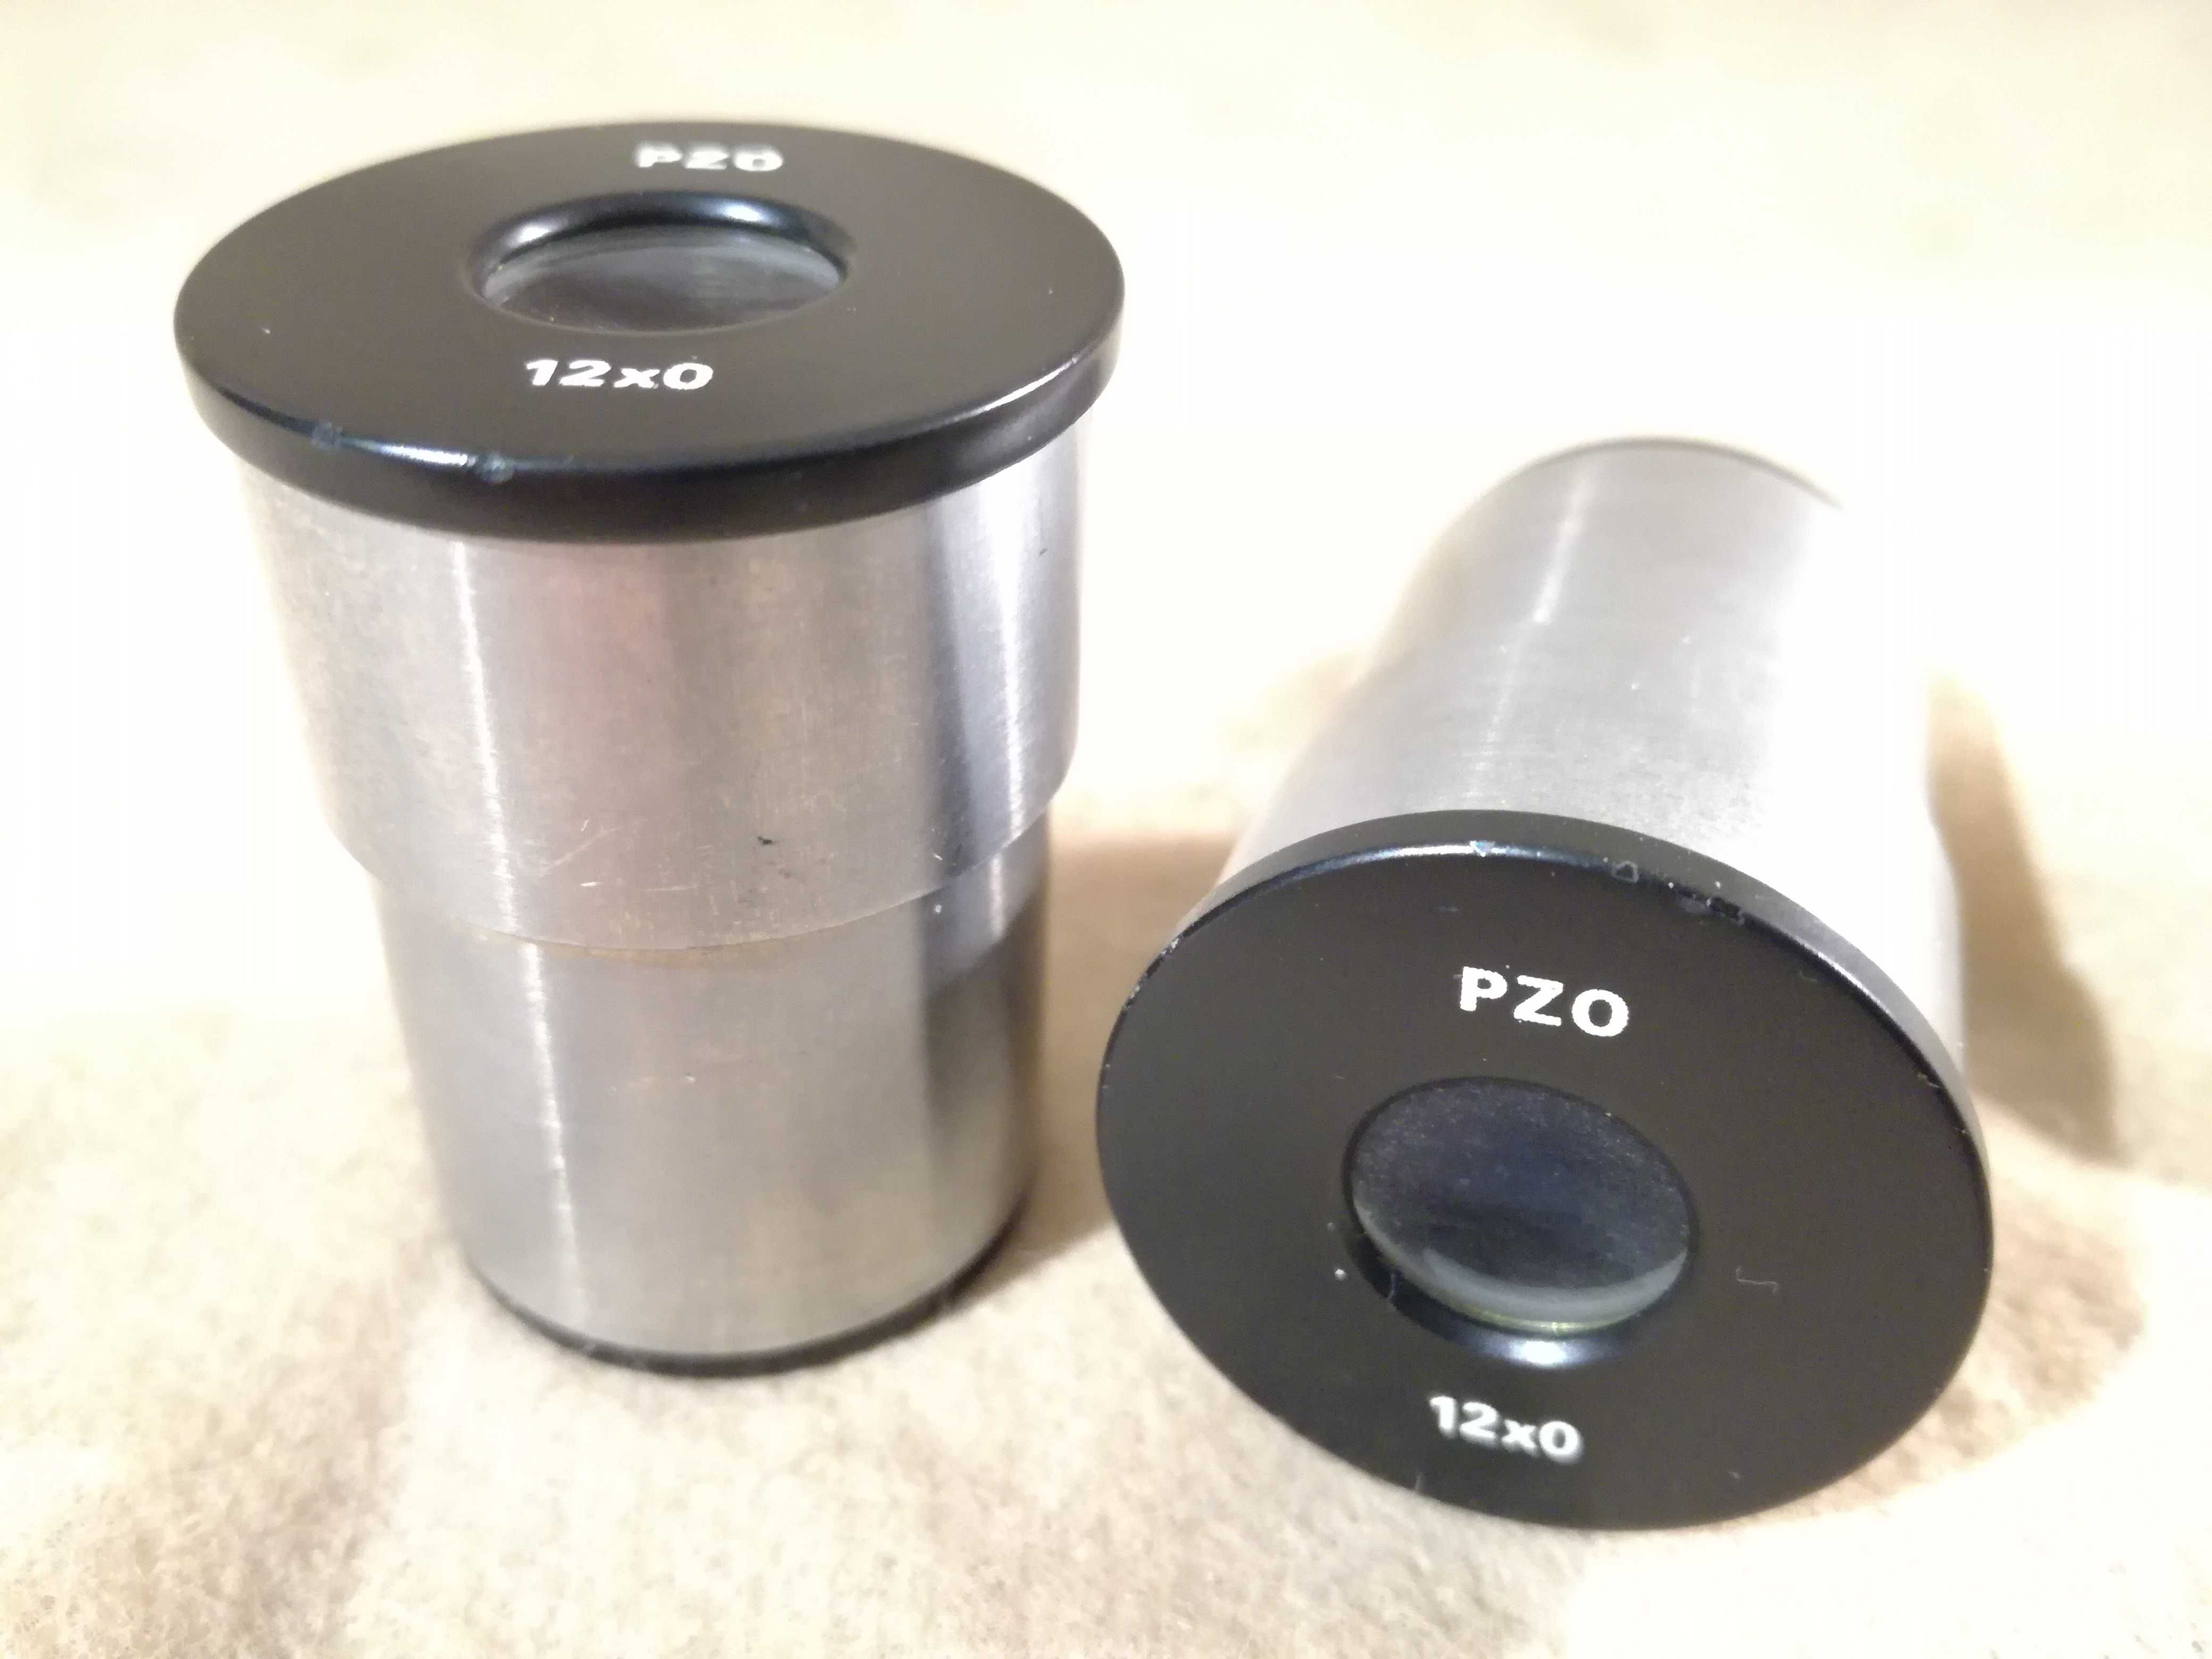 Okulary PZO 12x mikroskop 12x0 - 23,2 mm para Biolar Studar MB10 MB30